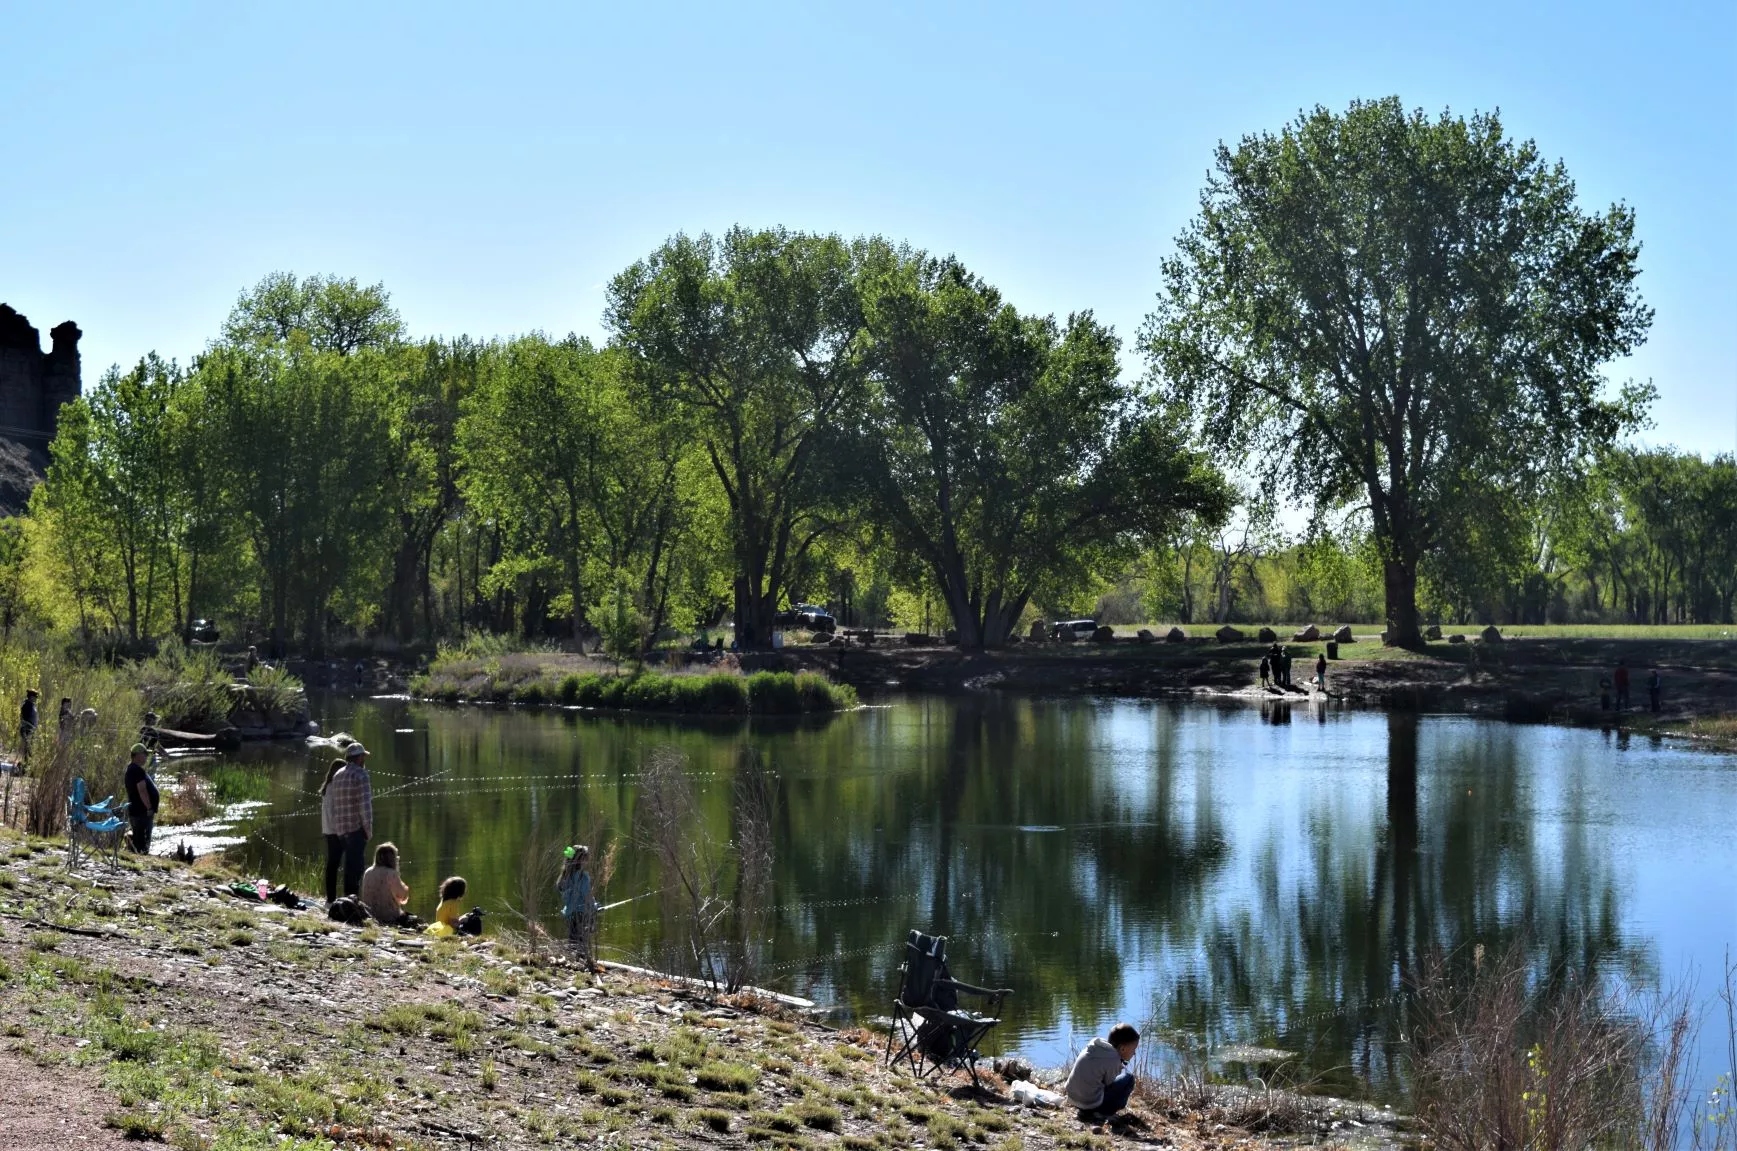 Fishing at Pathfinder Pond